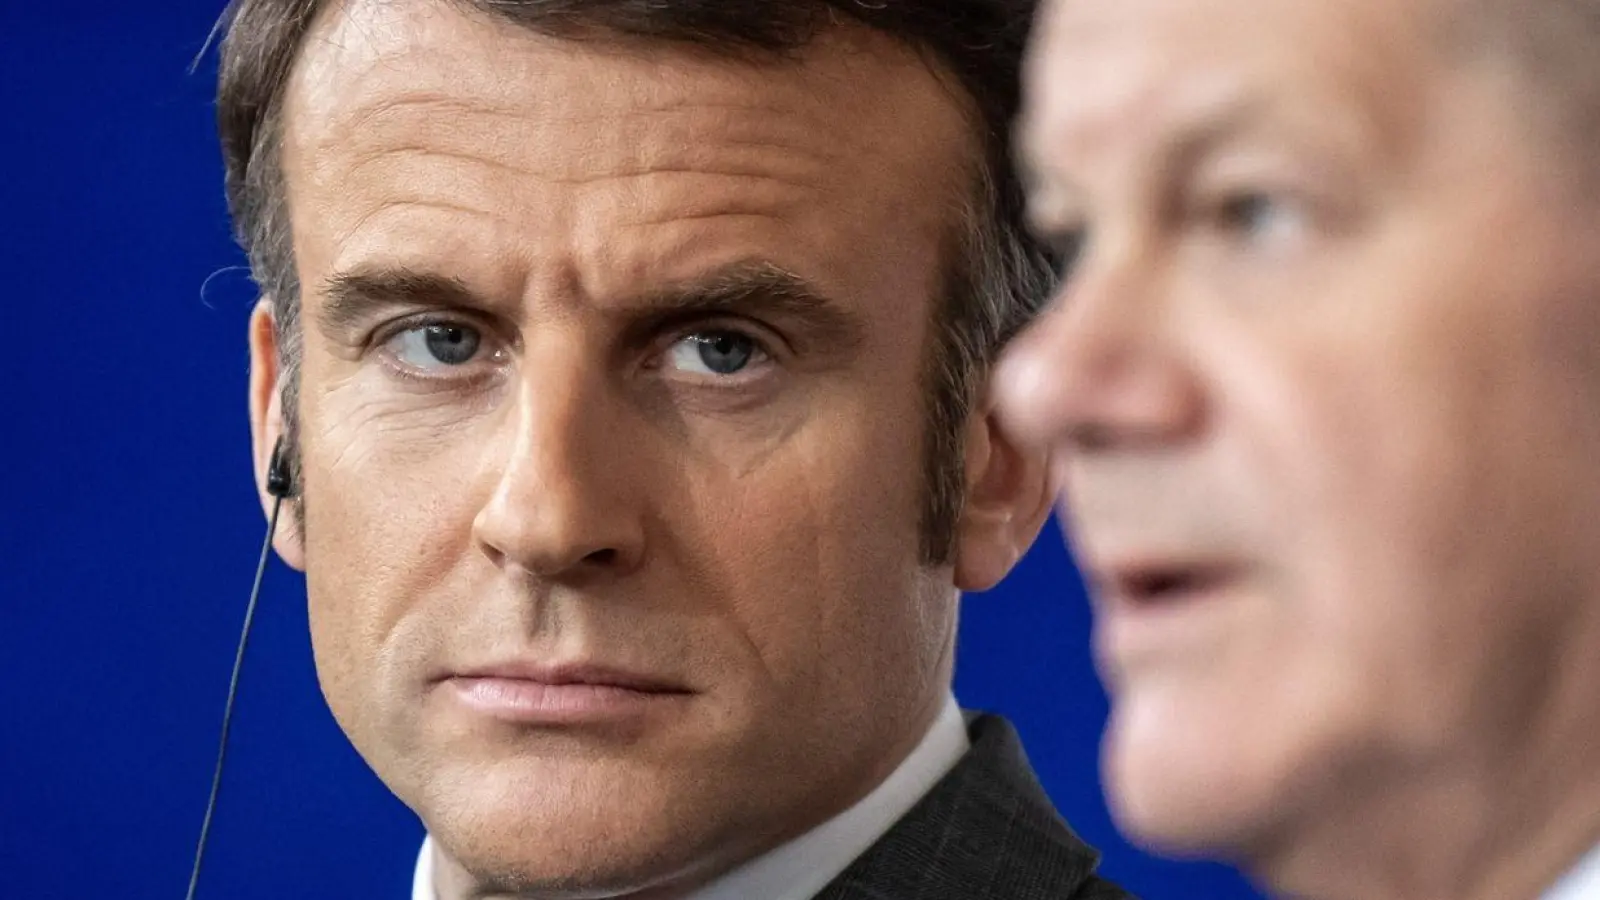 Frankreichs Präsident Emmanuel Macron (l) und Bundeskanzler Olaf Scholz (r) haben teils unterschiedliche Ansichten, wenn es um den Ukraine-Kurs geht. (Foto: Michael Kappeler/dpa)